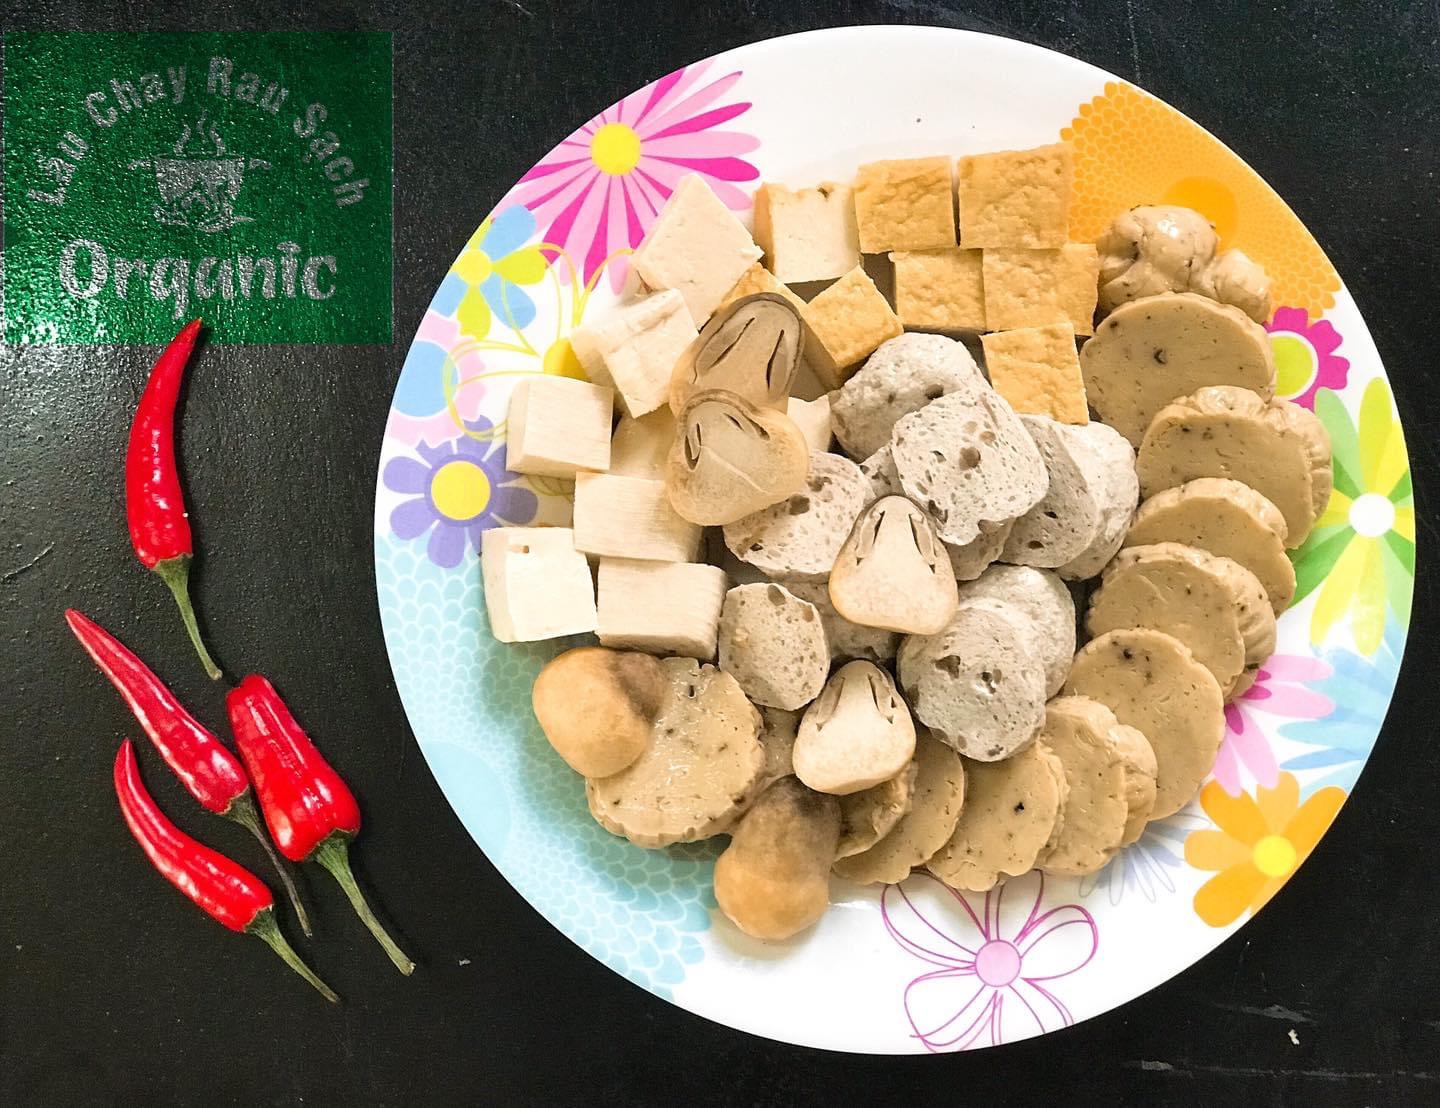 Top 7 Địa chỉ ăn chay ngon, chất lượng nhất tại Cần Thơ - Lẩu Chay Organic